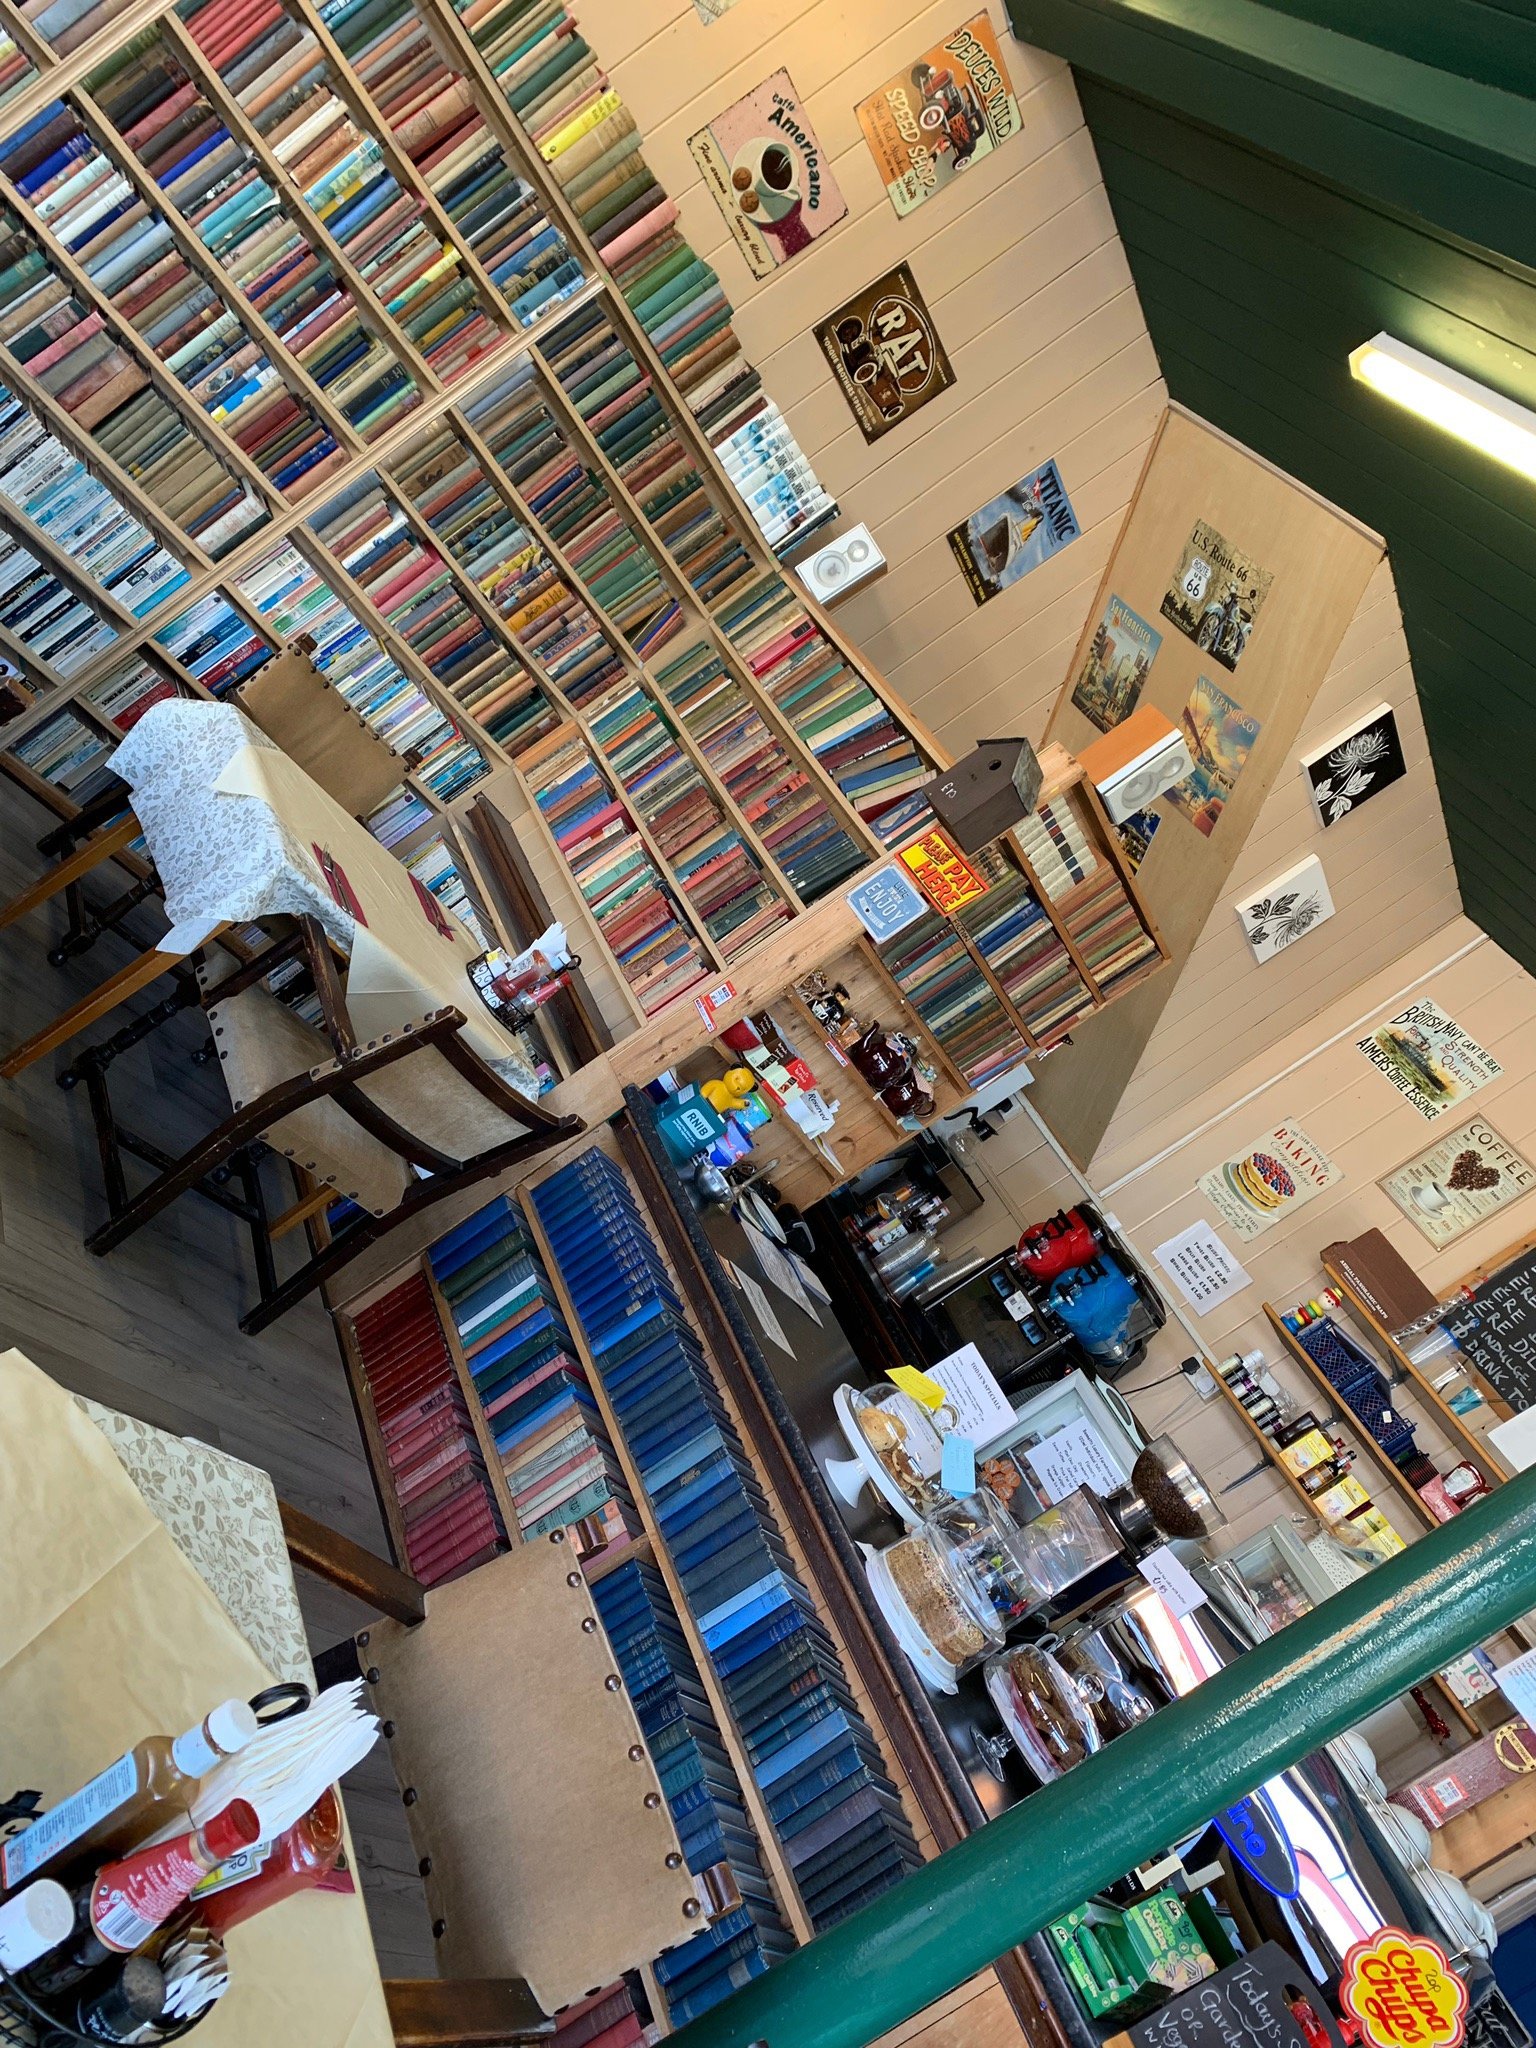 The Strand Bookshop and Café